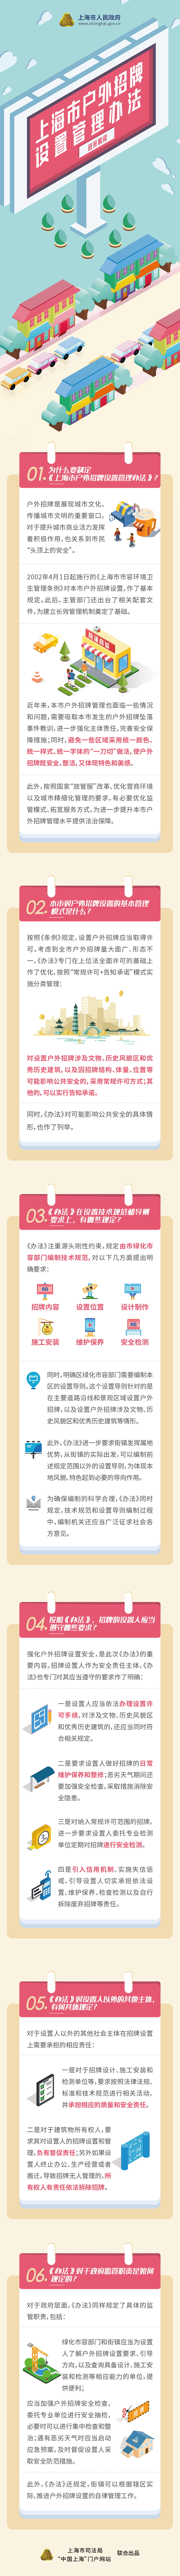 《上海市户外招牌设置管理办法》政策图解.jpg